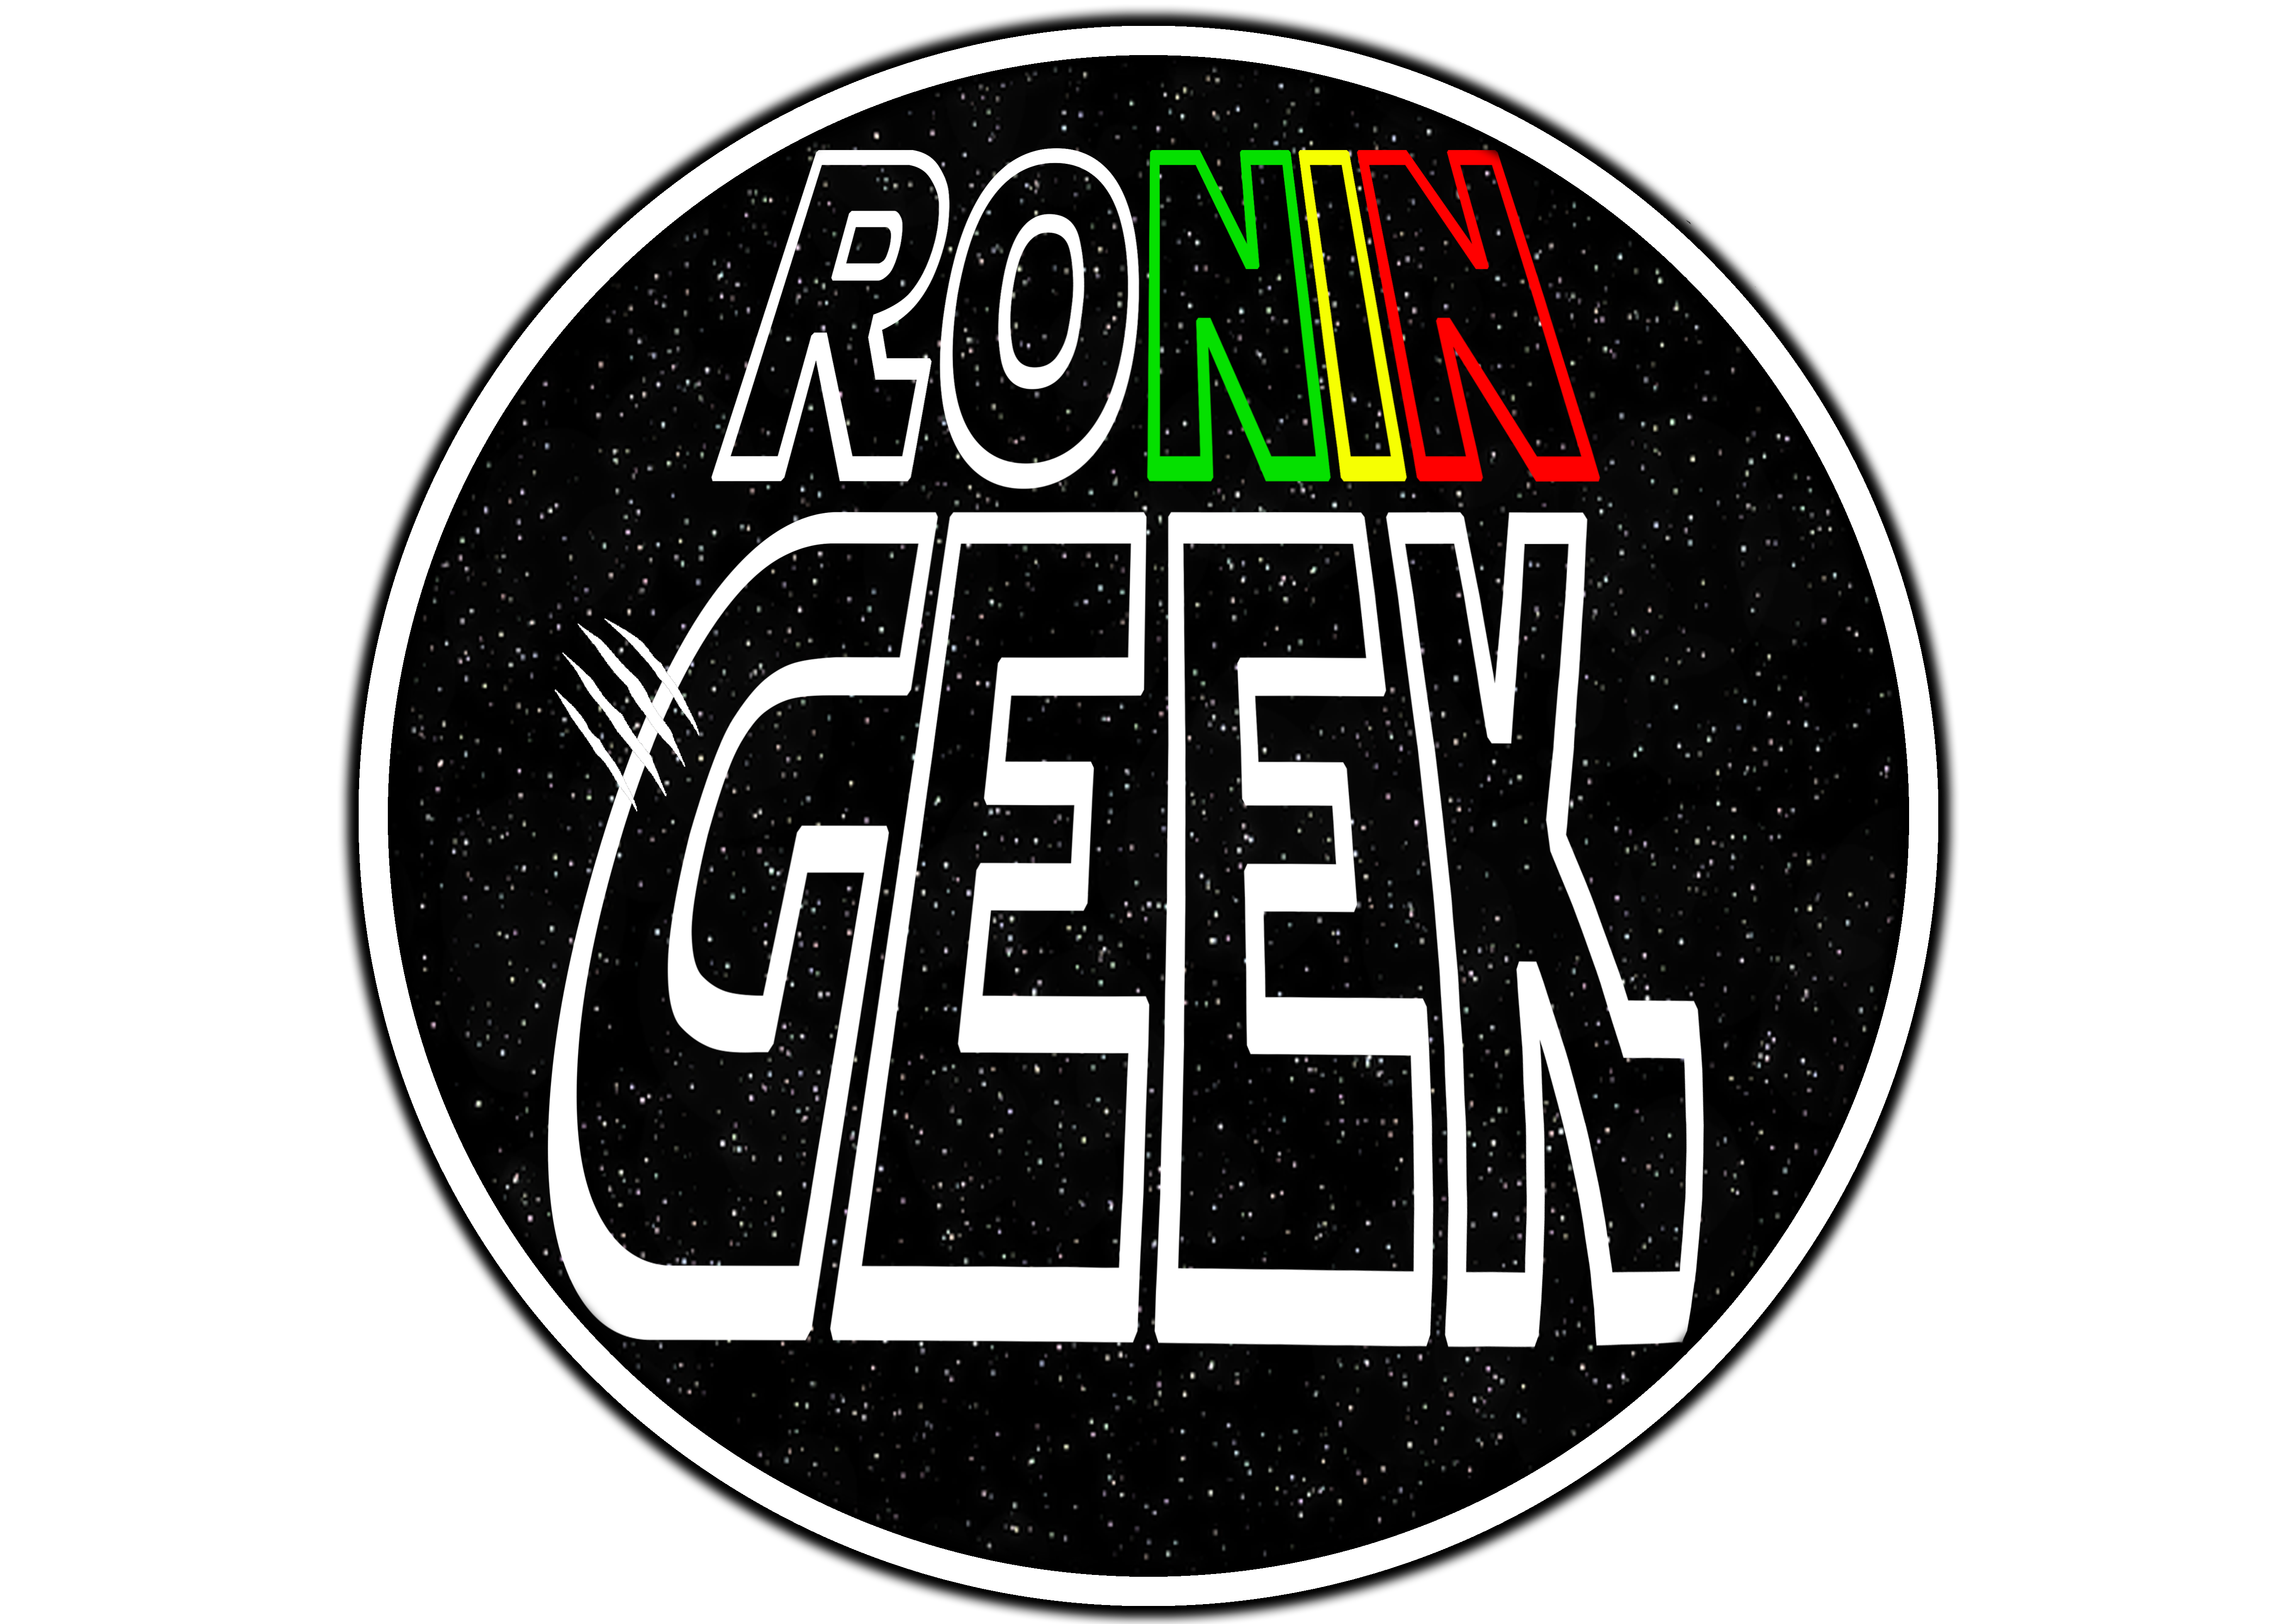 Ronin Geek